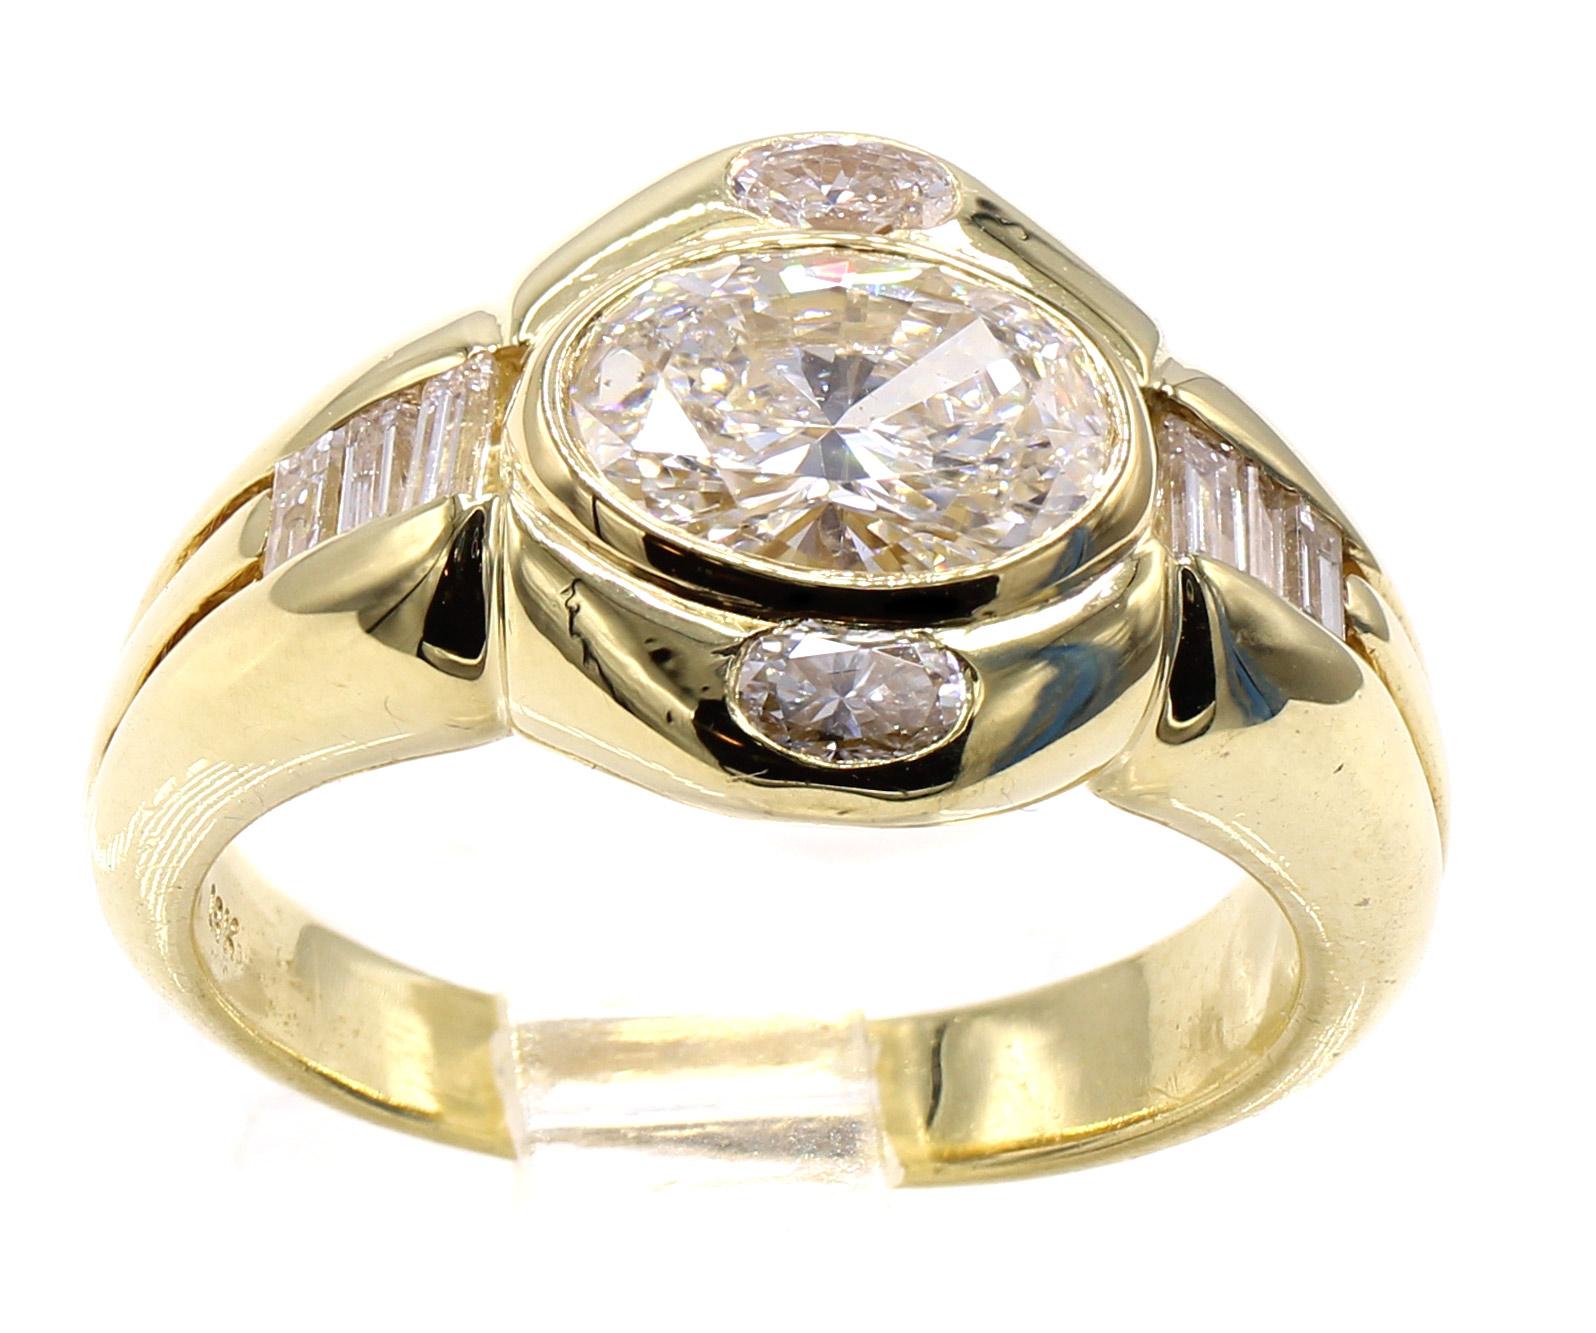 Magnifiquement conçue et réalisée de main de maître en or jaune 18 carats, cette bague présente un diamant central ovale taille brillant pesant 1,02 carats, agrémenté de petits diamants taille ovale d'un côté et de diamants taille baguette de